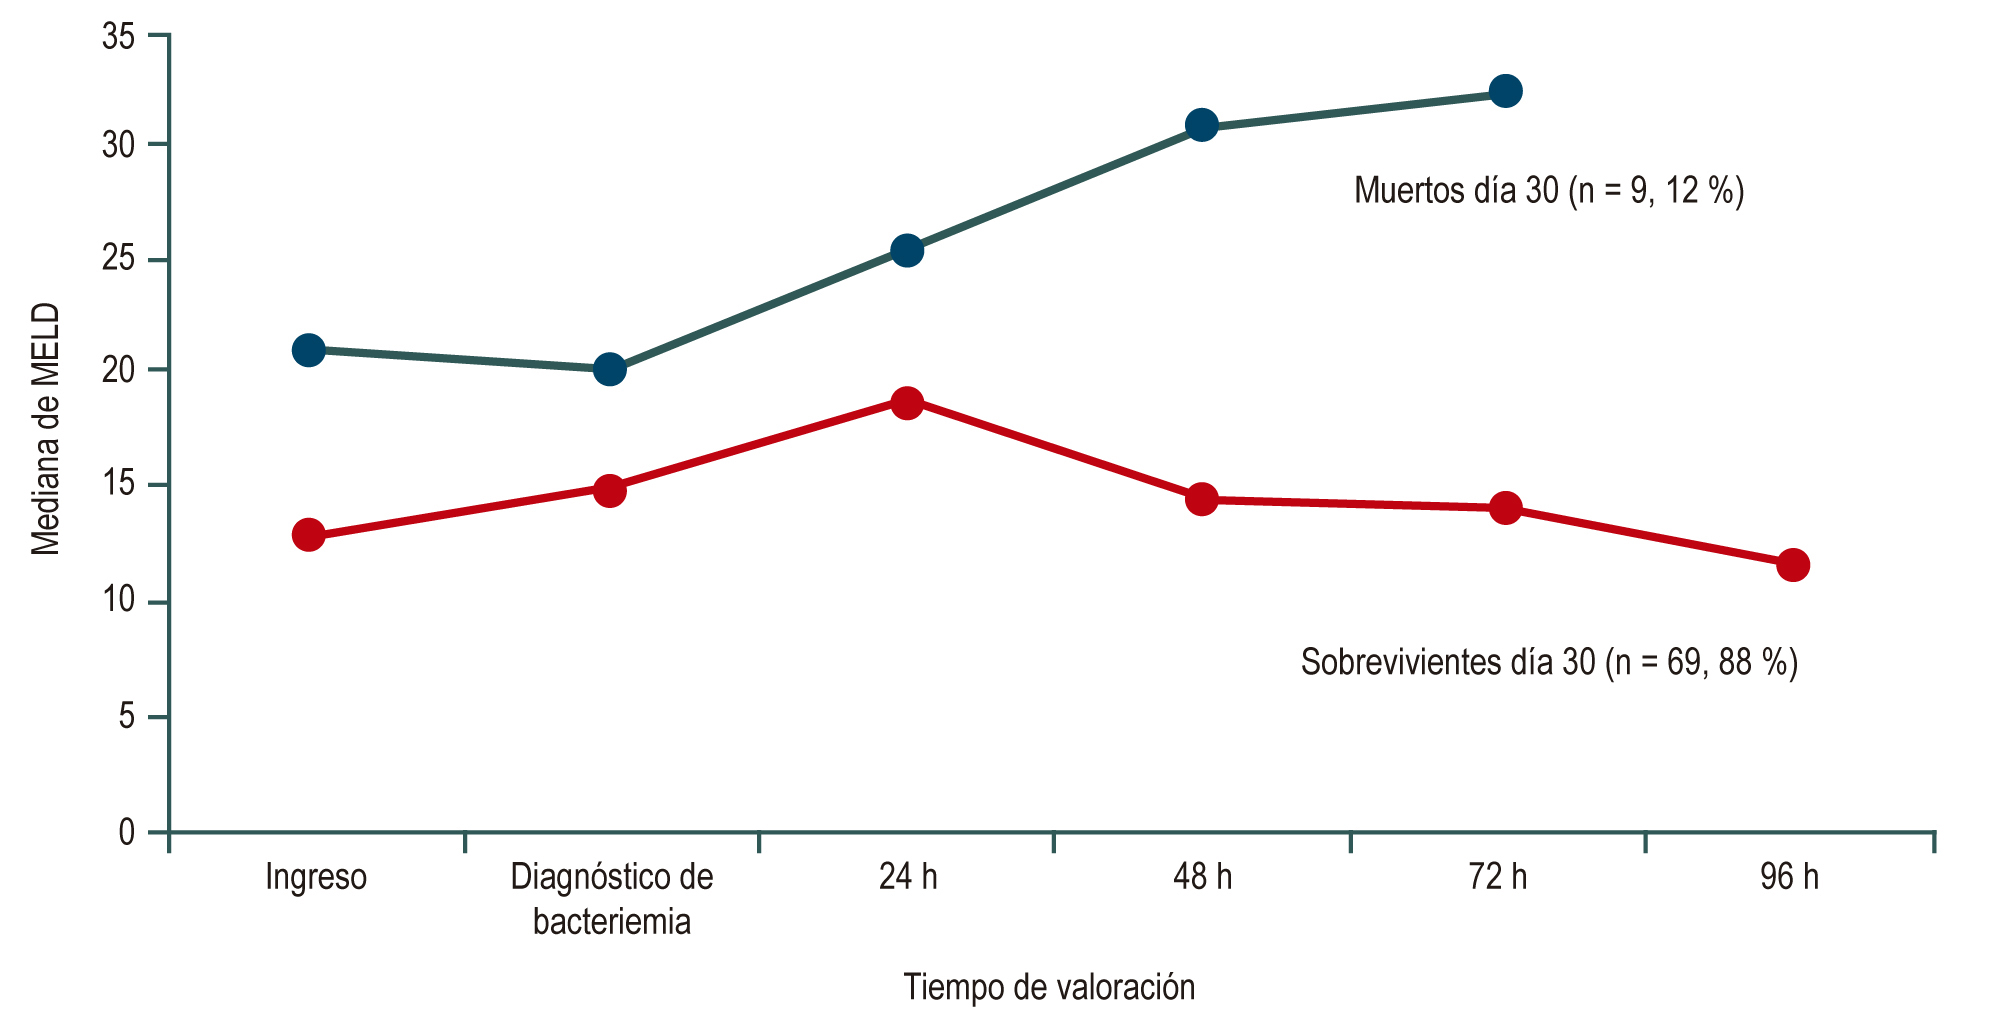 Figura 1. Patrón de la mediana en la puntuación MELD de pacientes cirróticos con bacteriemia desde el ingreso hospitalario en sobrevivientes (línea roja) y muertos (línea azul) a 30 días de haber ingresado.